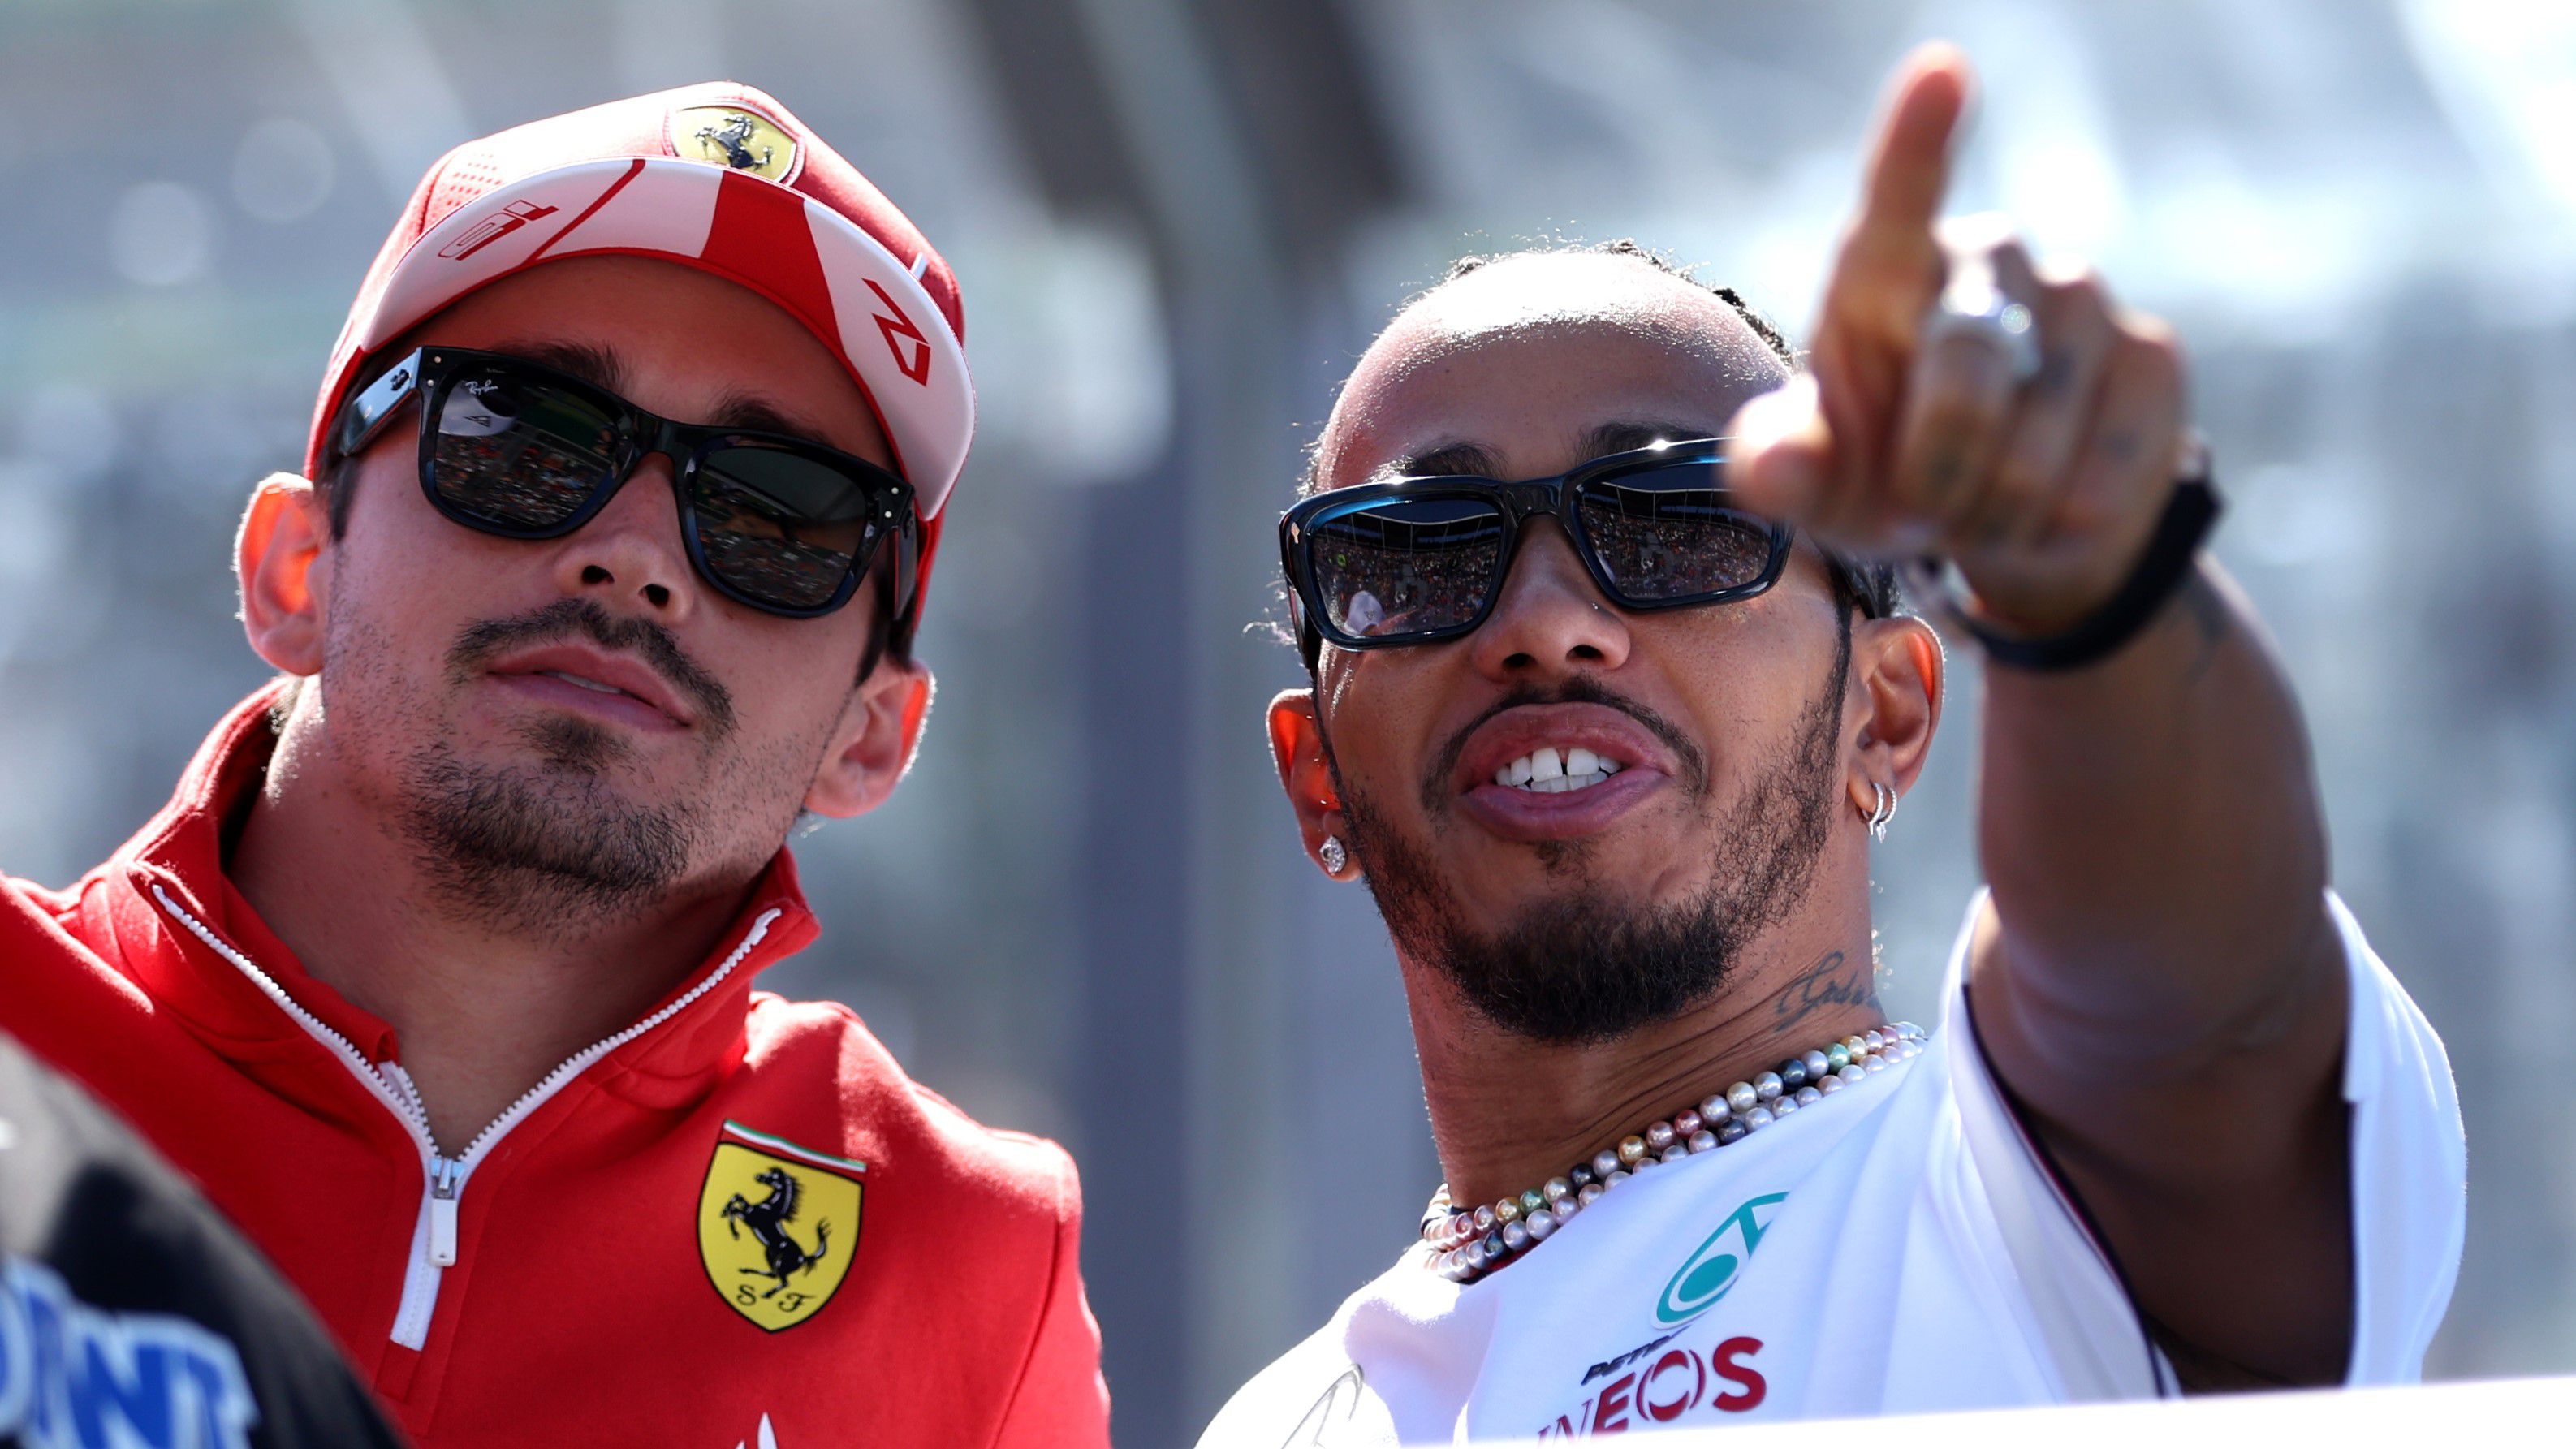 F1-hírek: Leclerc ezt szeretné először ellesni Hamiltontól